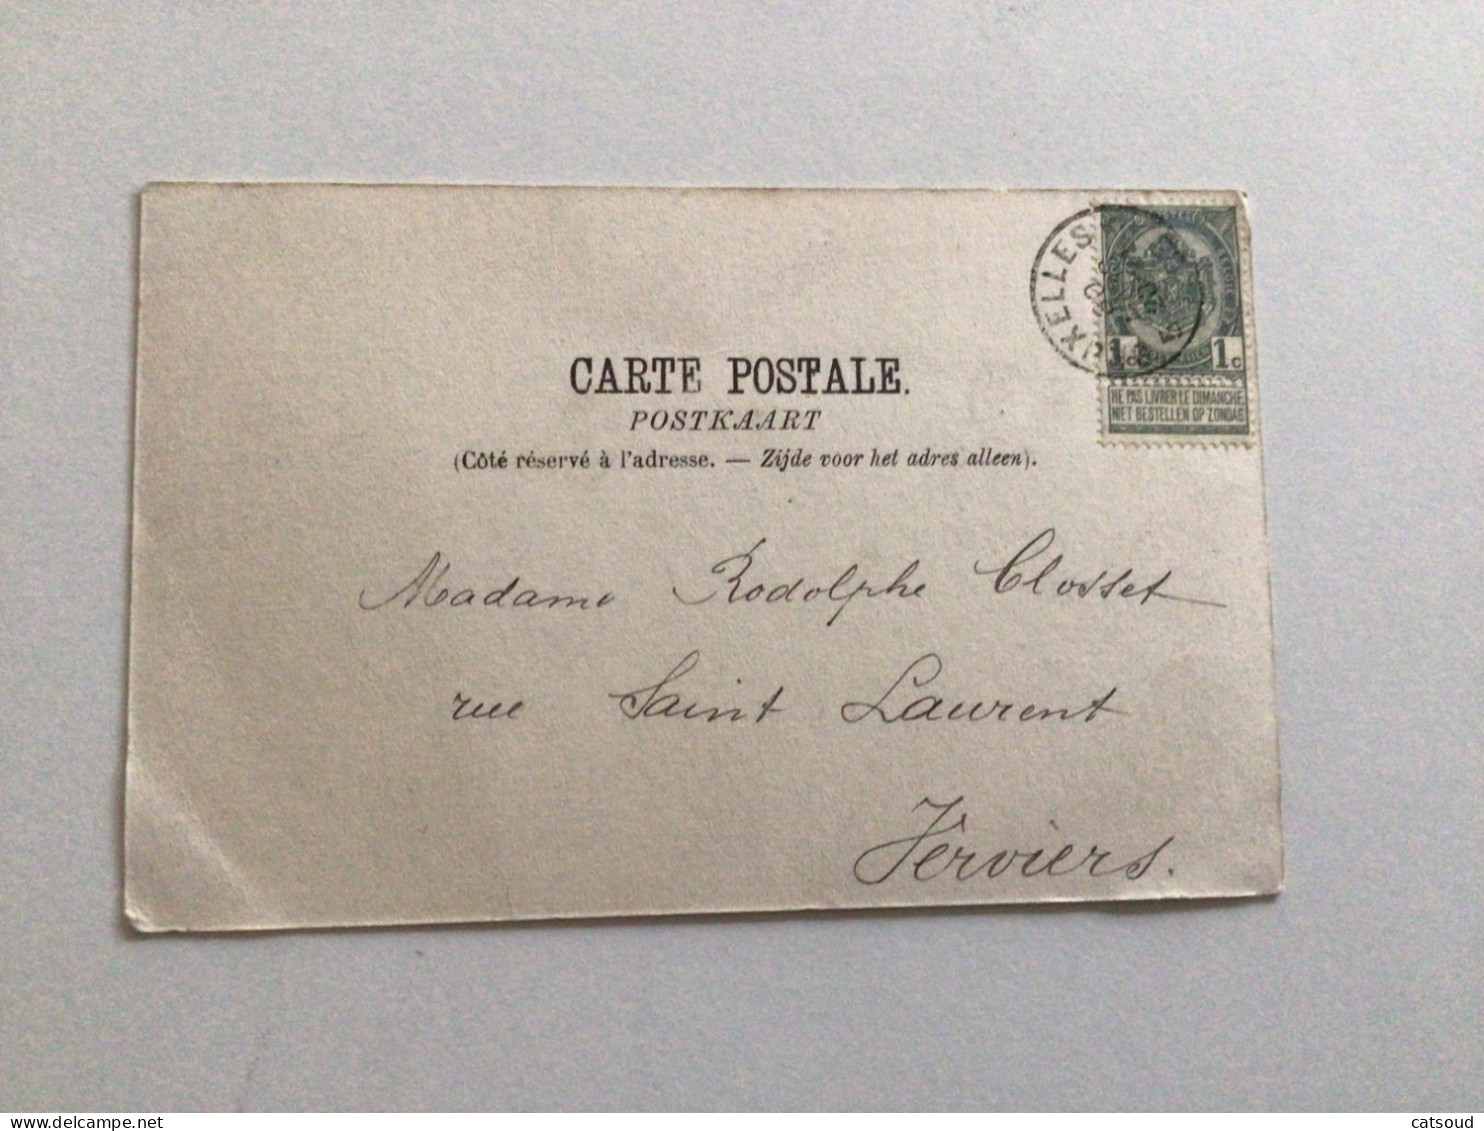 Carte Postale Ancienne (1908)  Bruxelles L’Hôtel Du Prince Albert Rue De La Science - Monuments, édifices